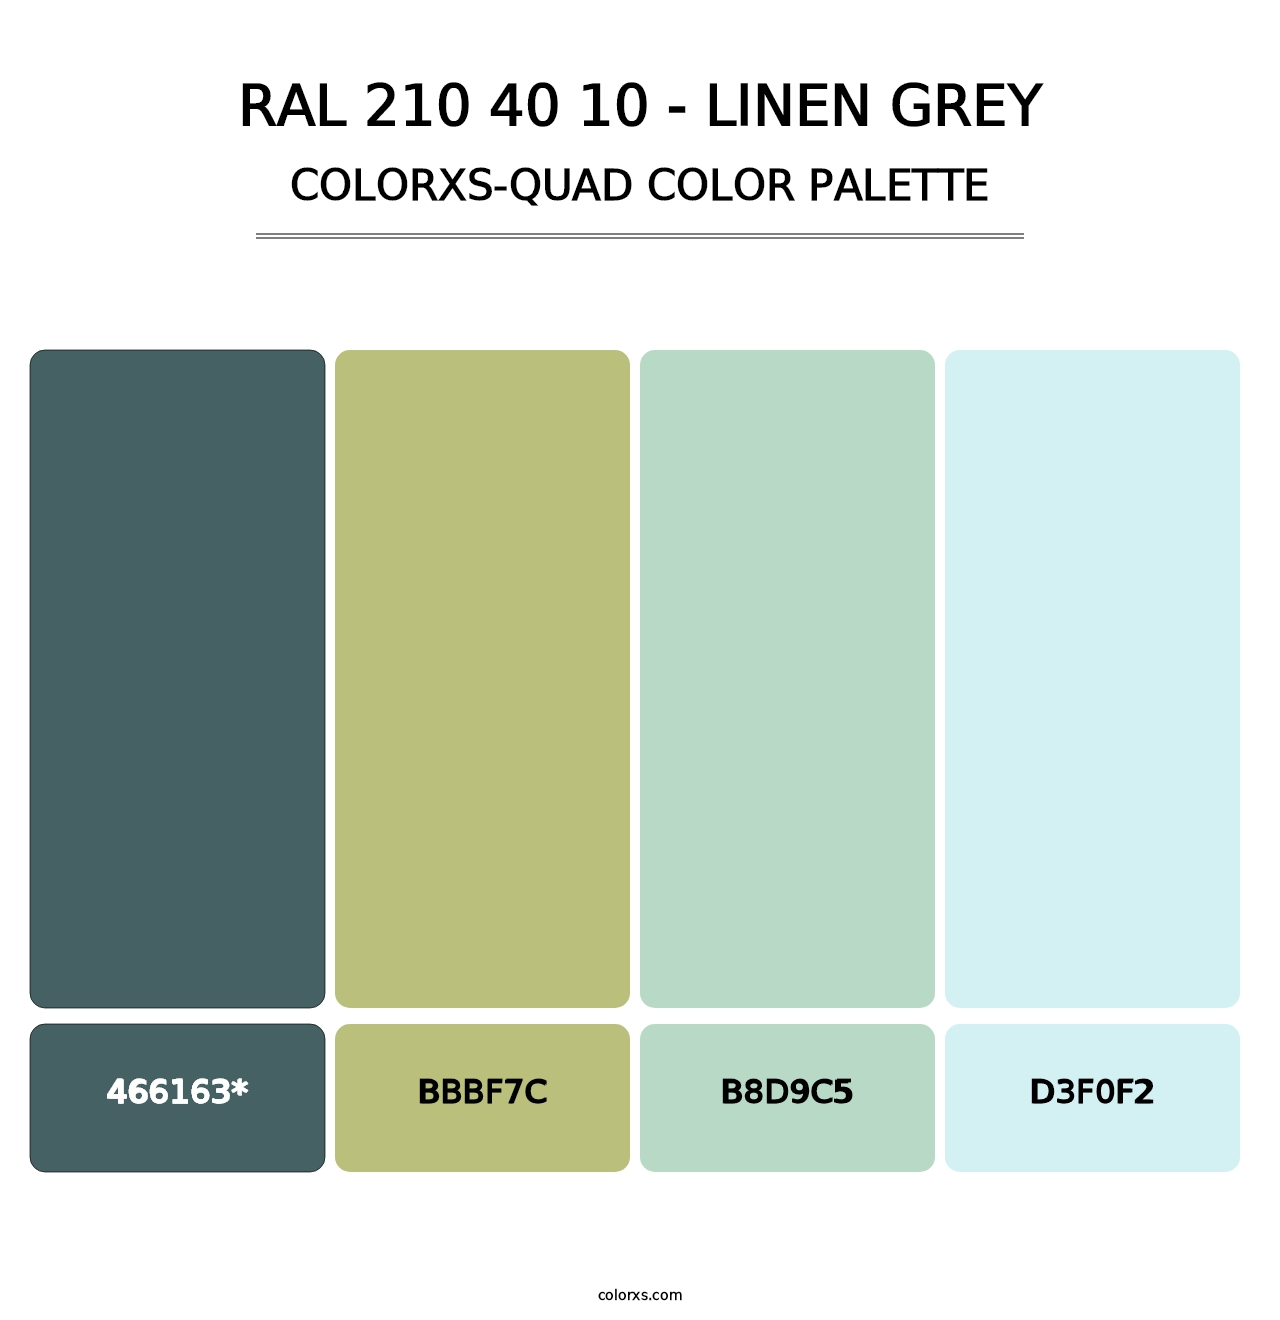 RAL 210 40 10 - Linen Grey - Colorxs Quad Palette